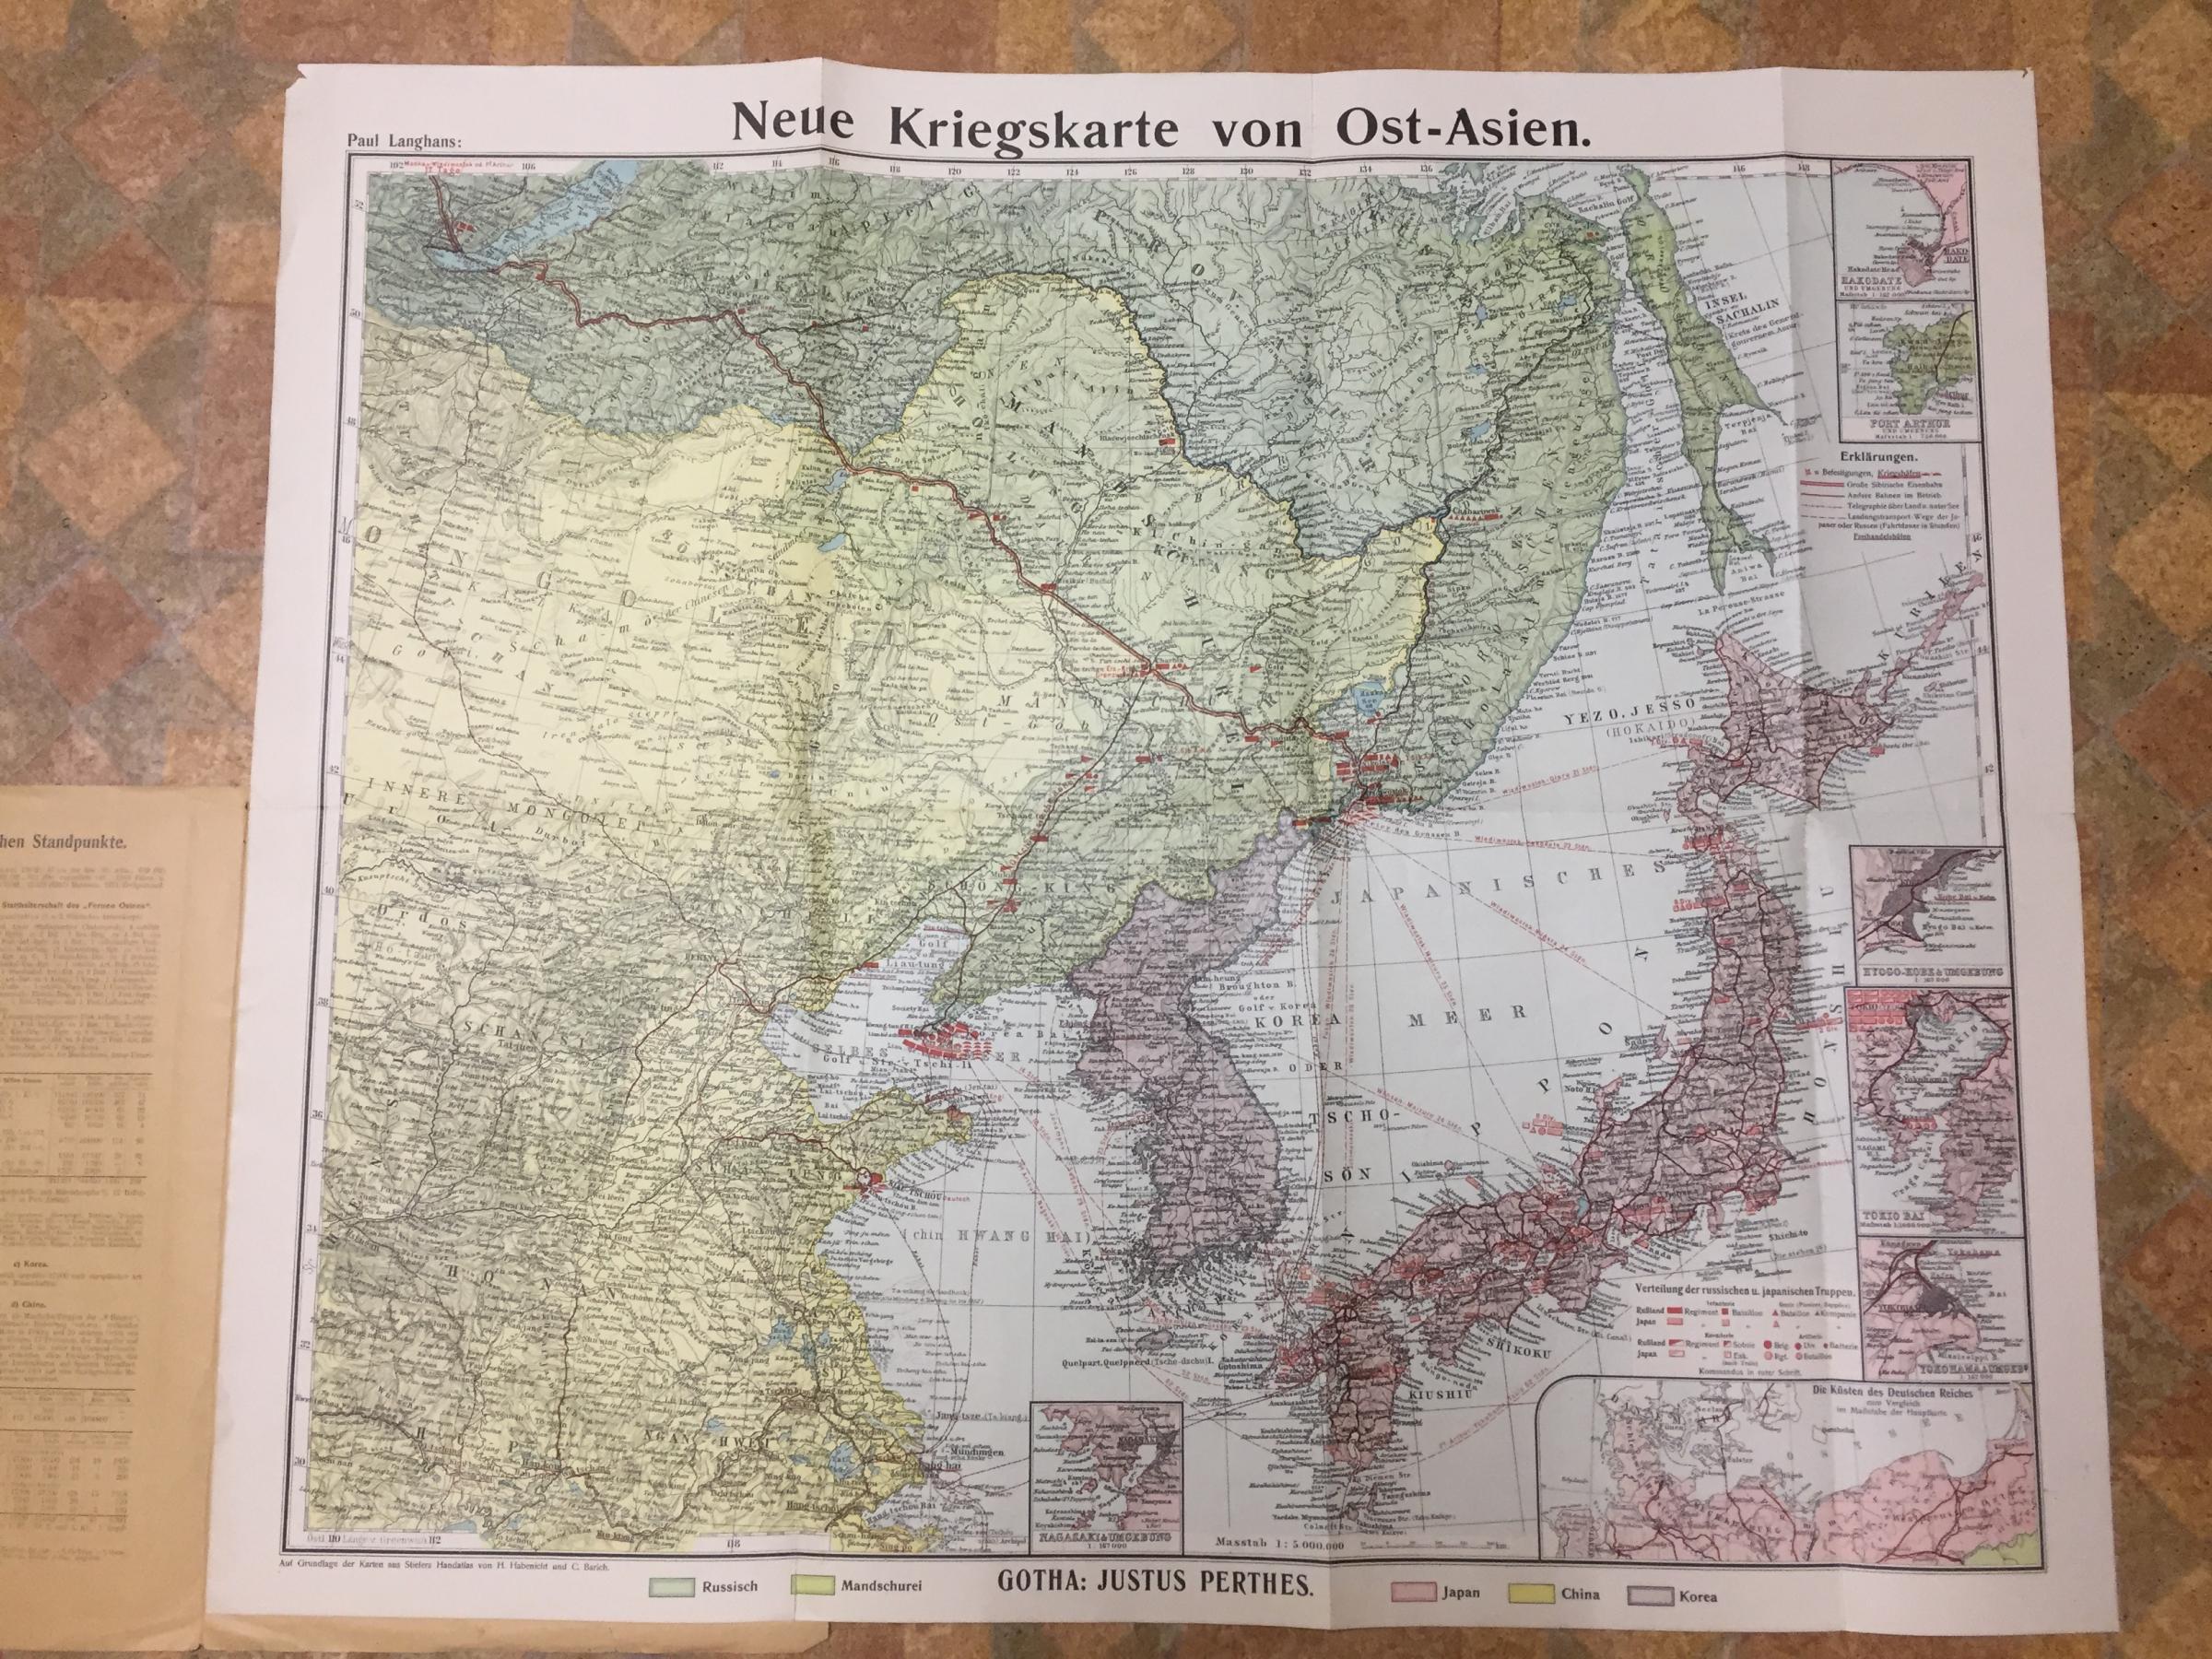 Neue Kriegskarte von Ost-Asien (Новая военная карта Восточной Азии). Нанемецком языке